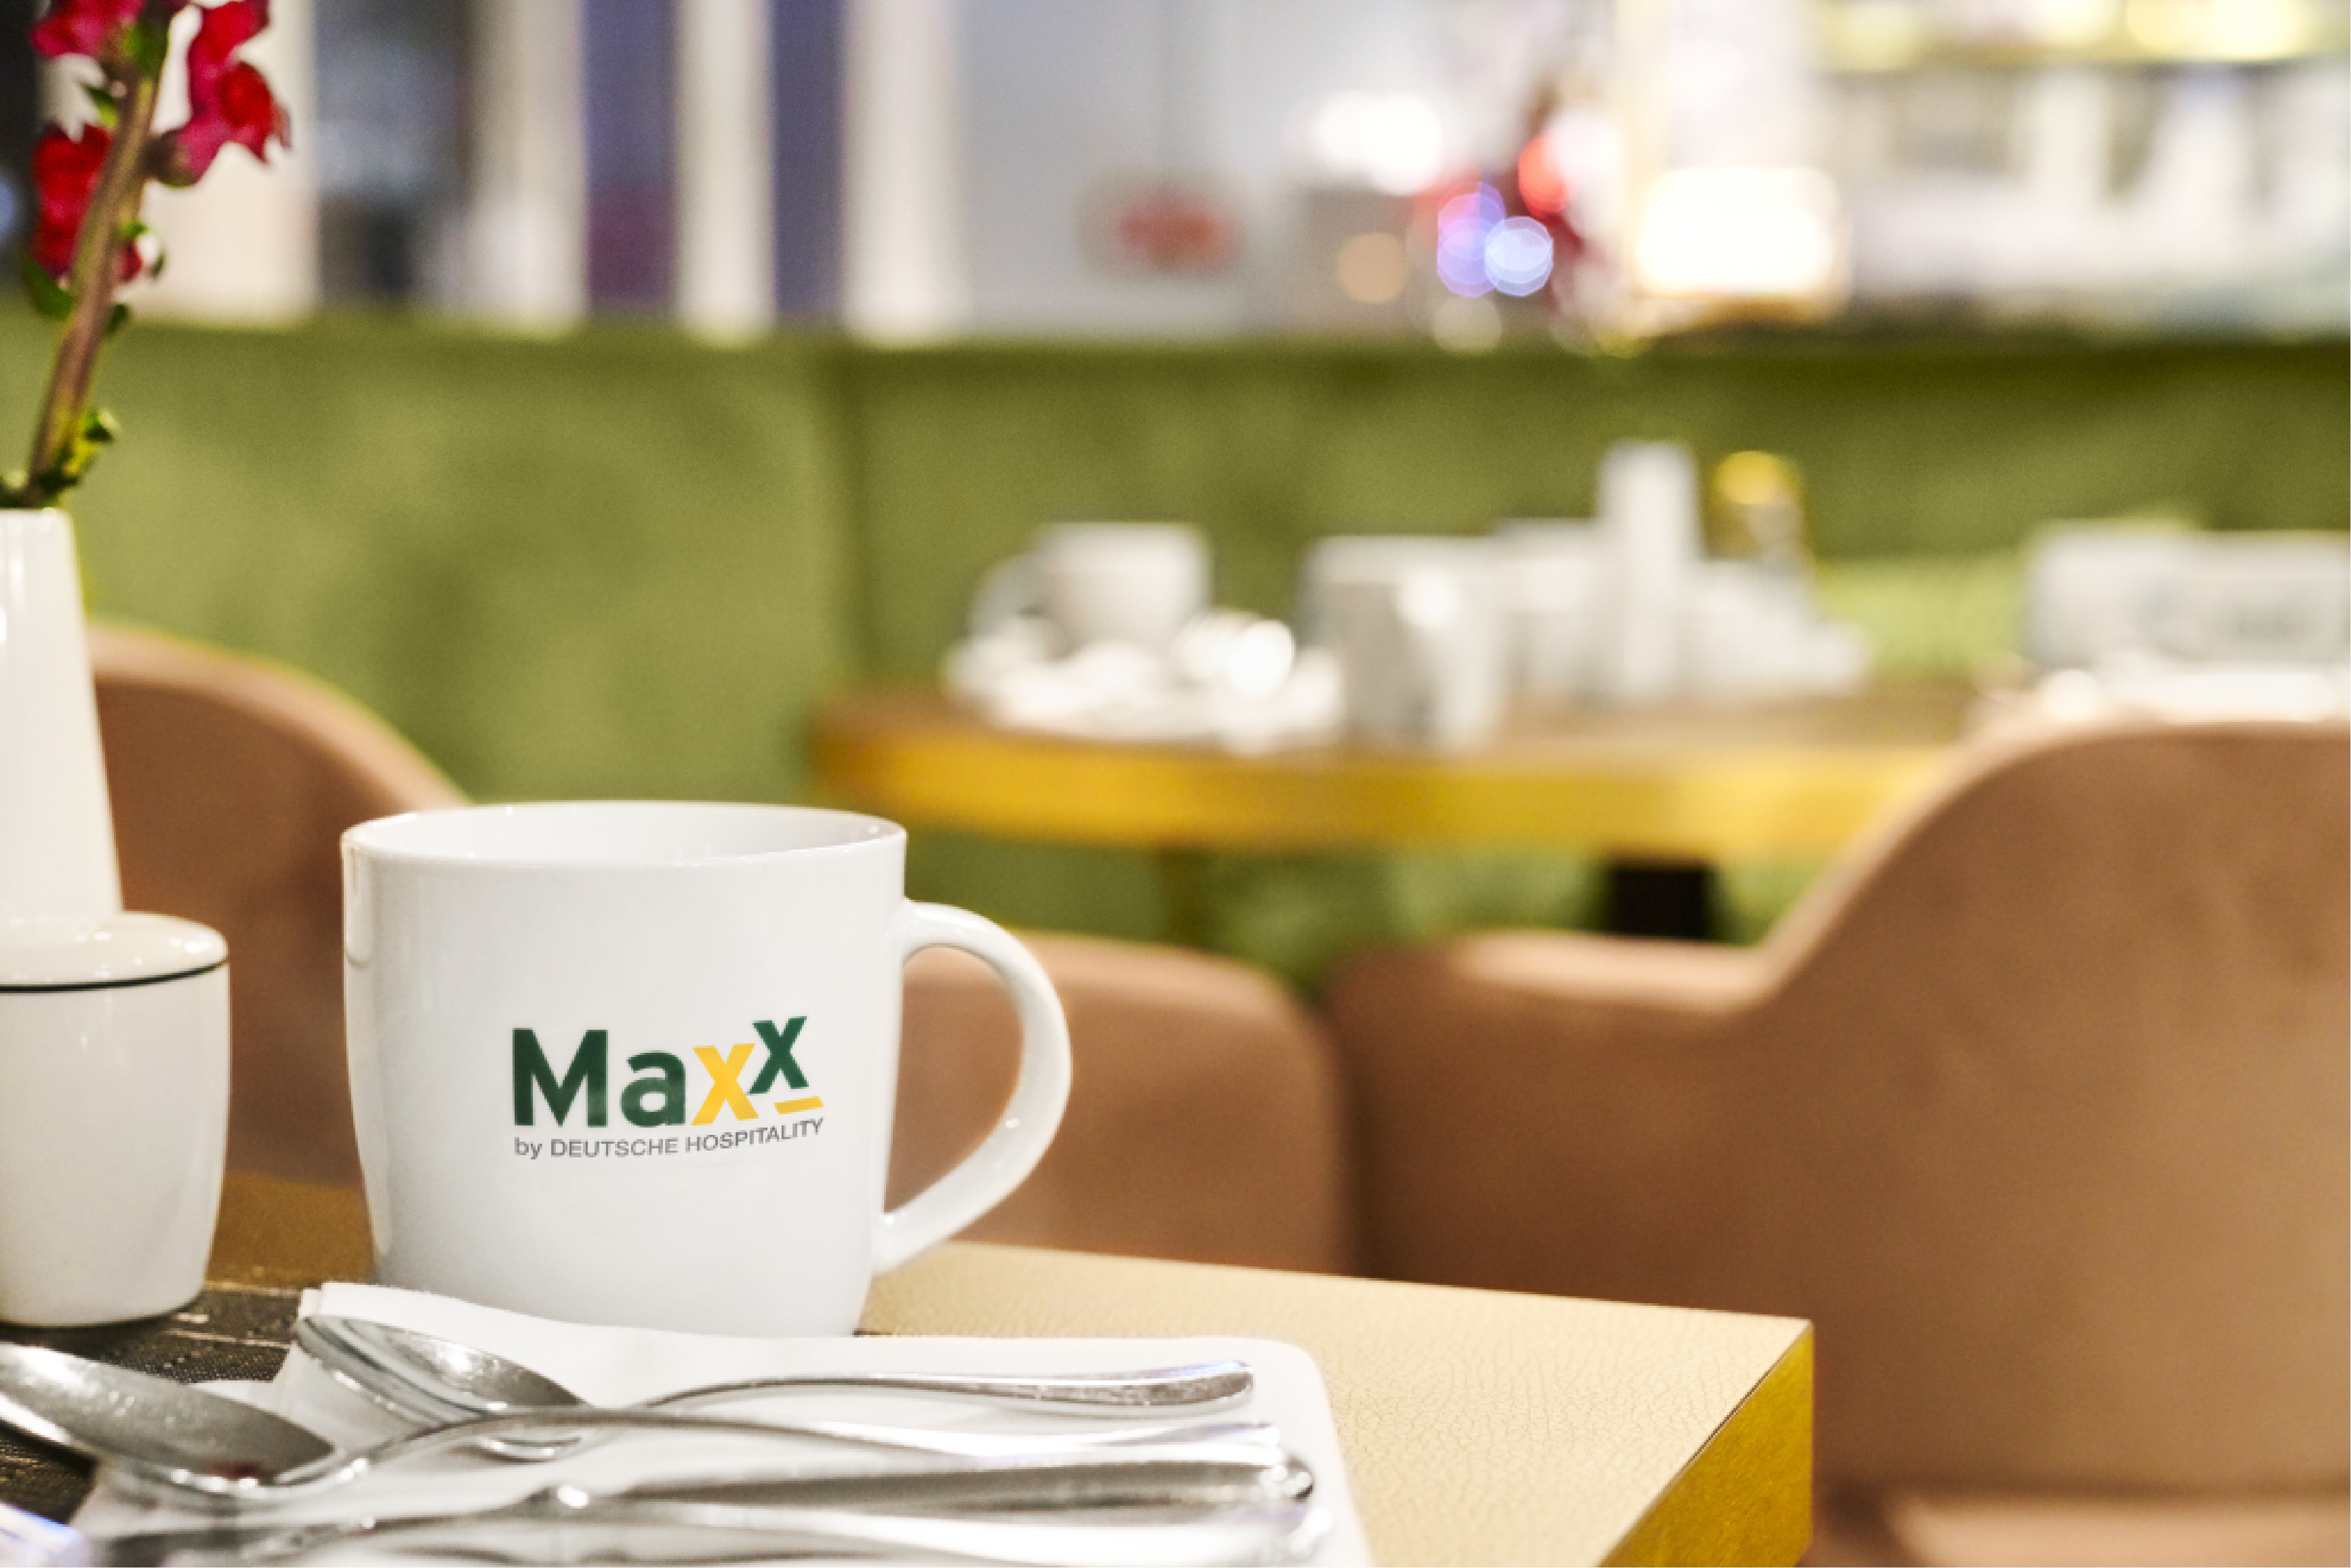 MAXX Hotel, Aalen.
